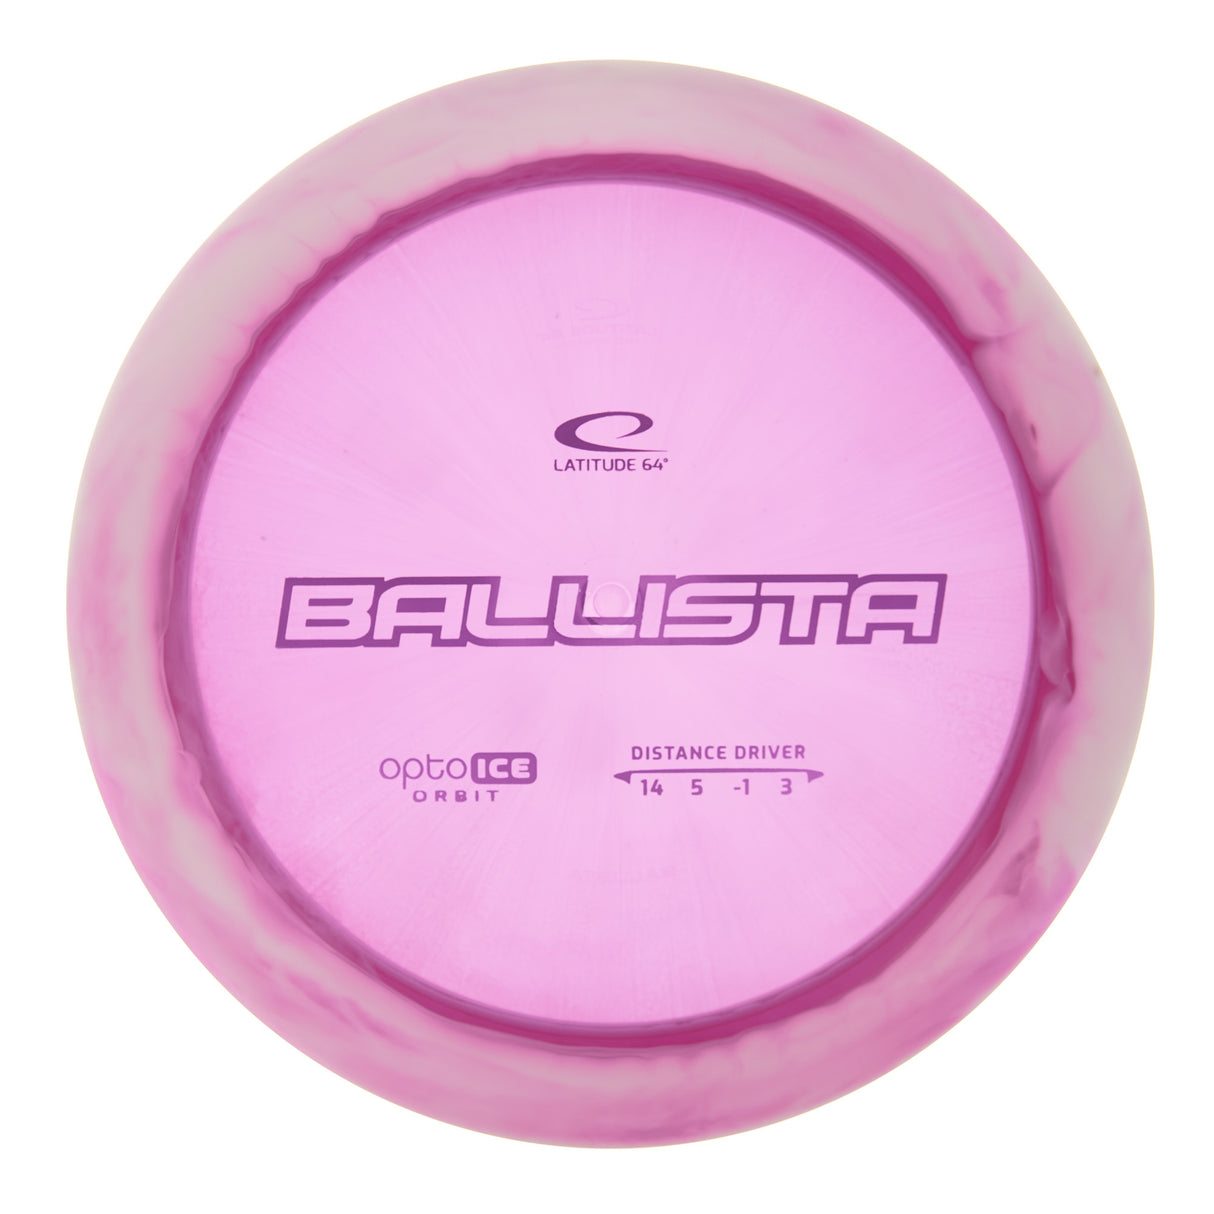 Latitude 64 Ballista - Opto Ice Orbit 174g | Style 0008